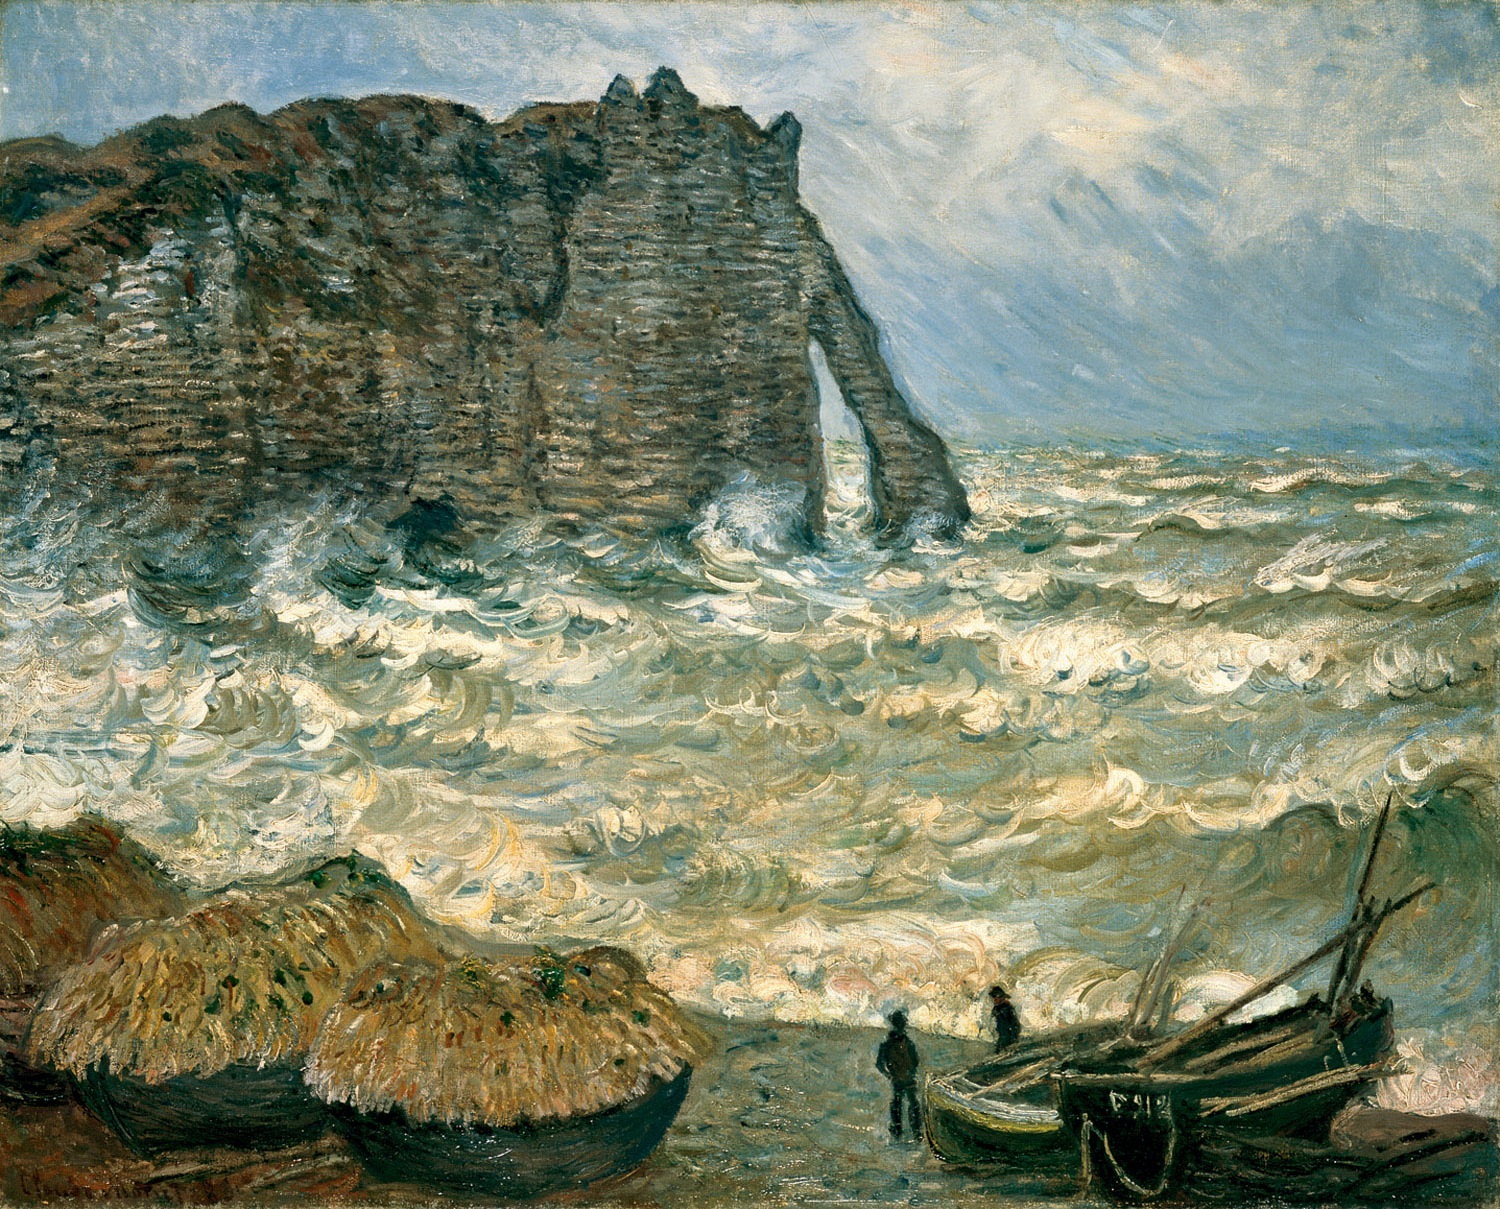 エトルタの荒海 by Claude Monet - 1883 - 81x 100 cm 